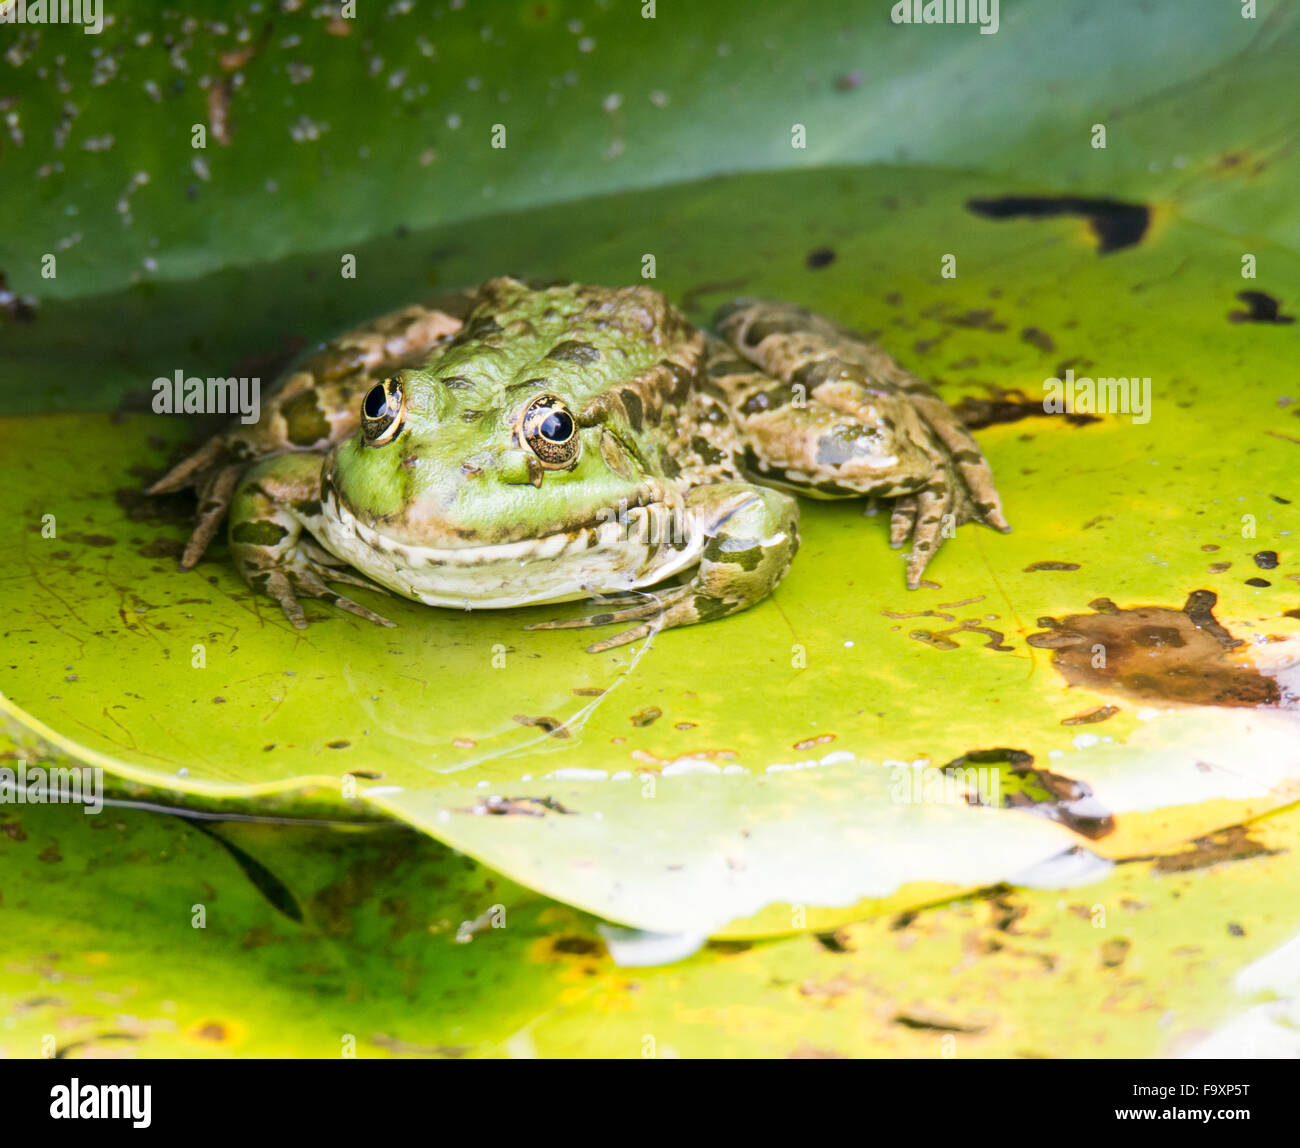 La grenouille verte assise sur une feuille de nénuphar Banque D'Images